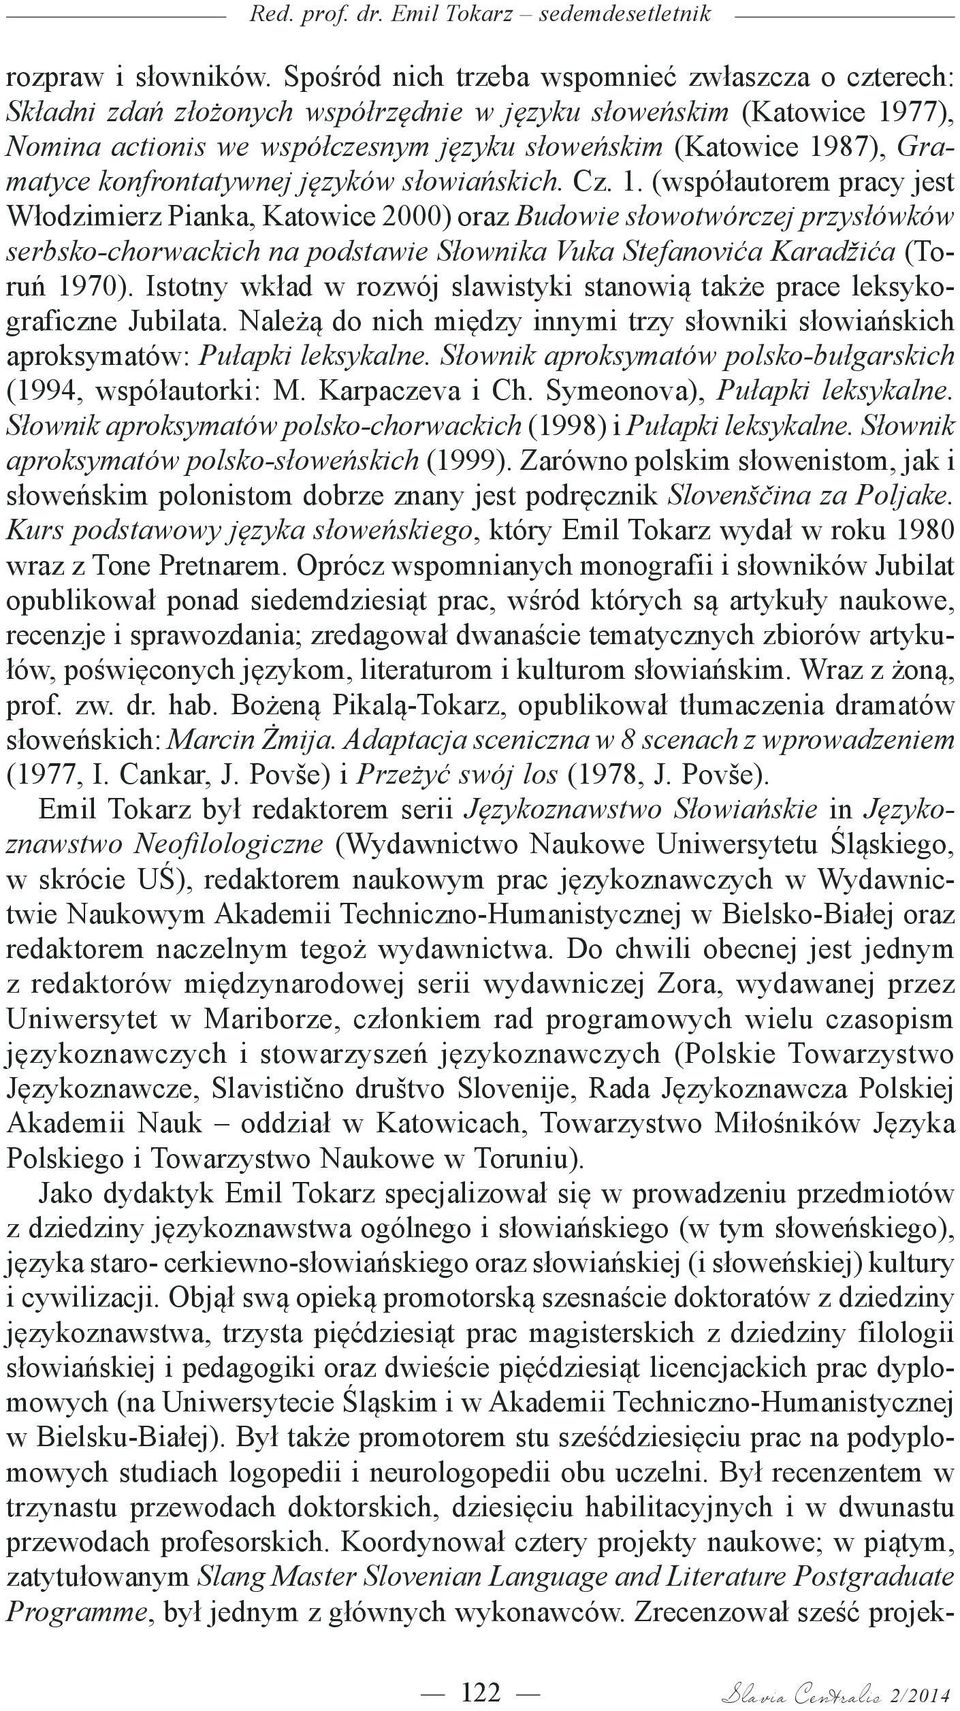 Gramatyce konfrontatywnej języków słowiańskich. Cz. 1.